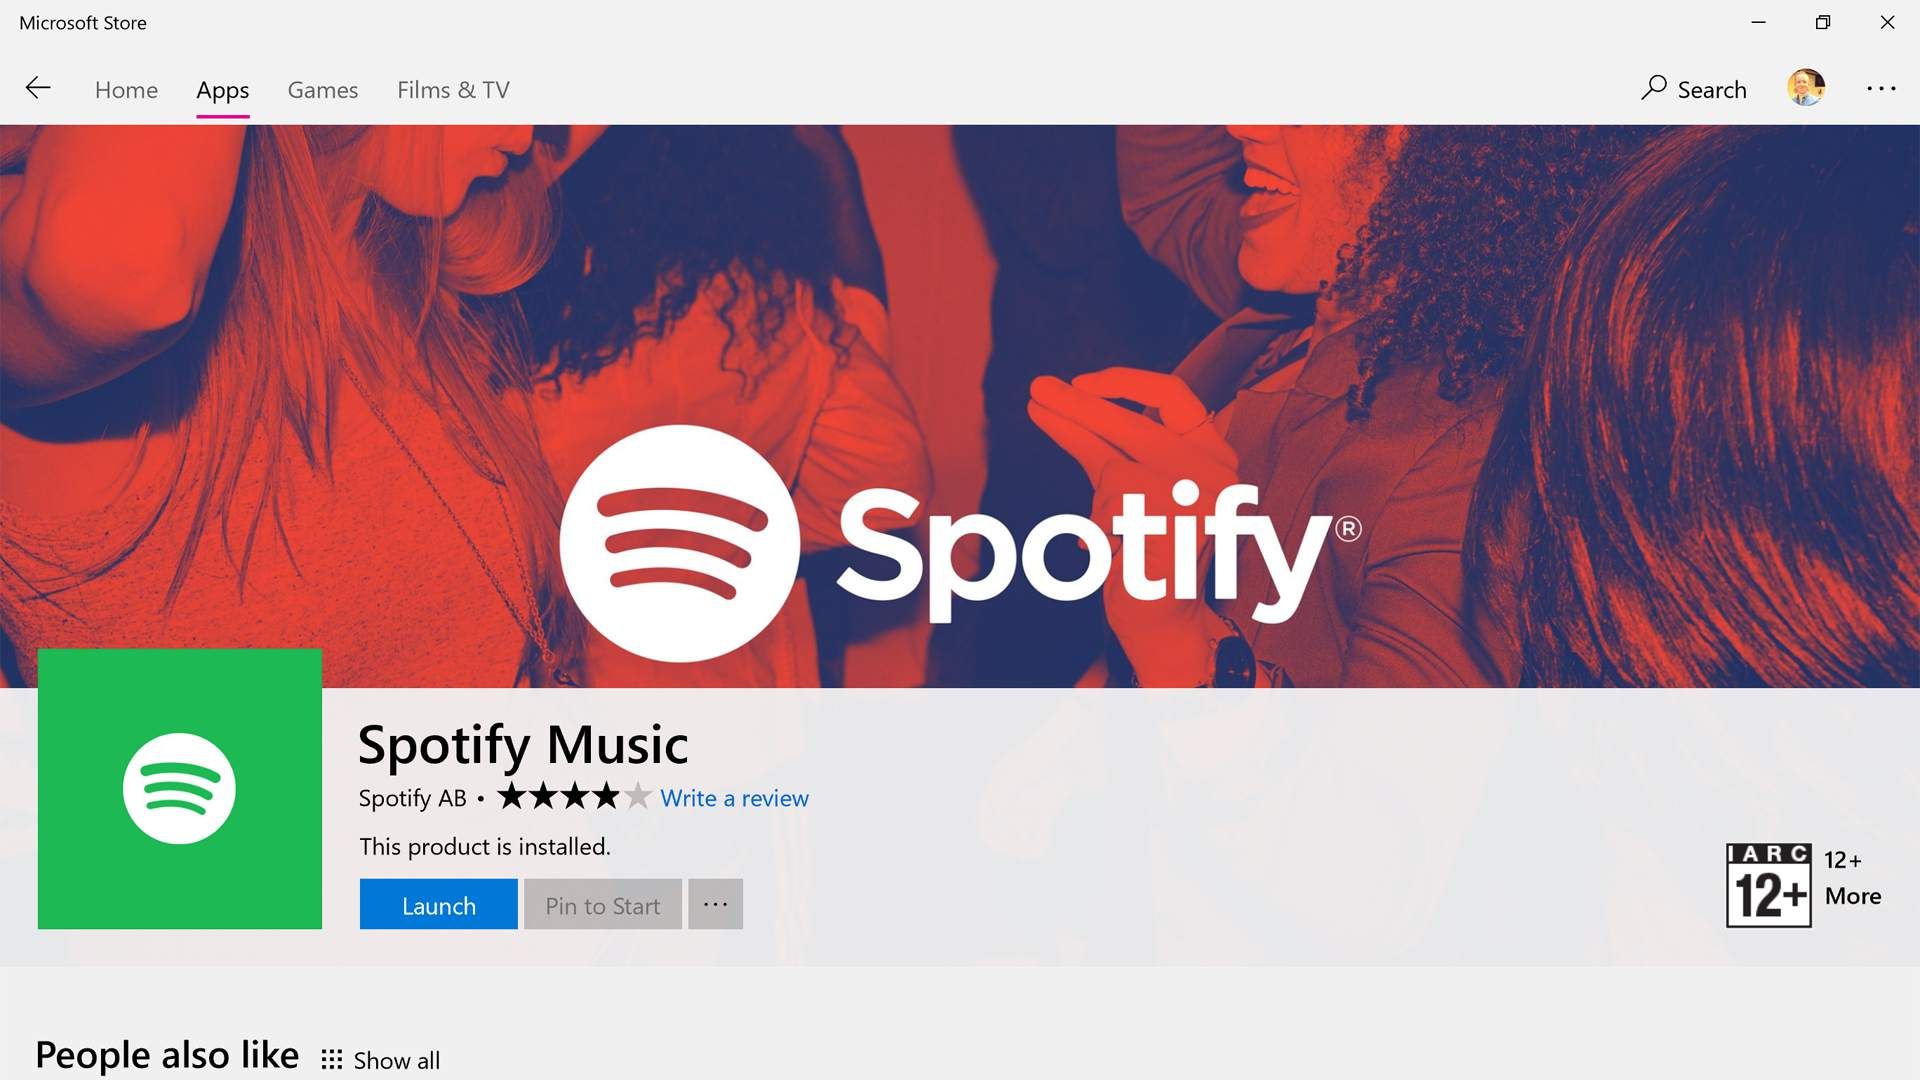 Страница продукта Spotify в магазине приложений Microsoft Store в Windows 10